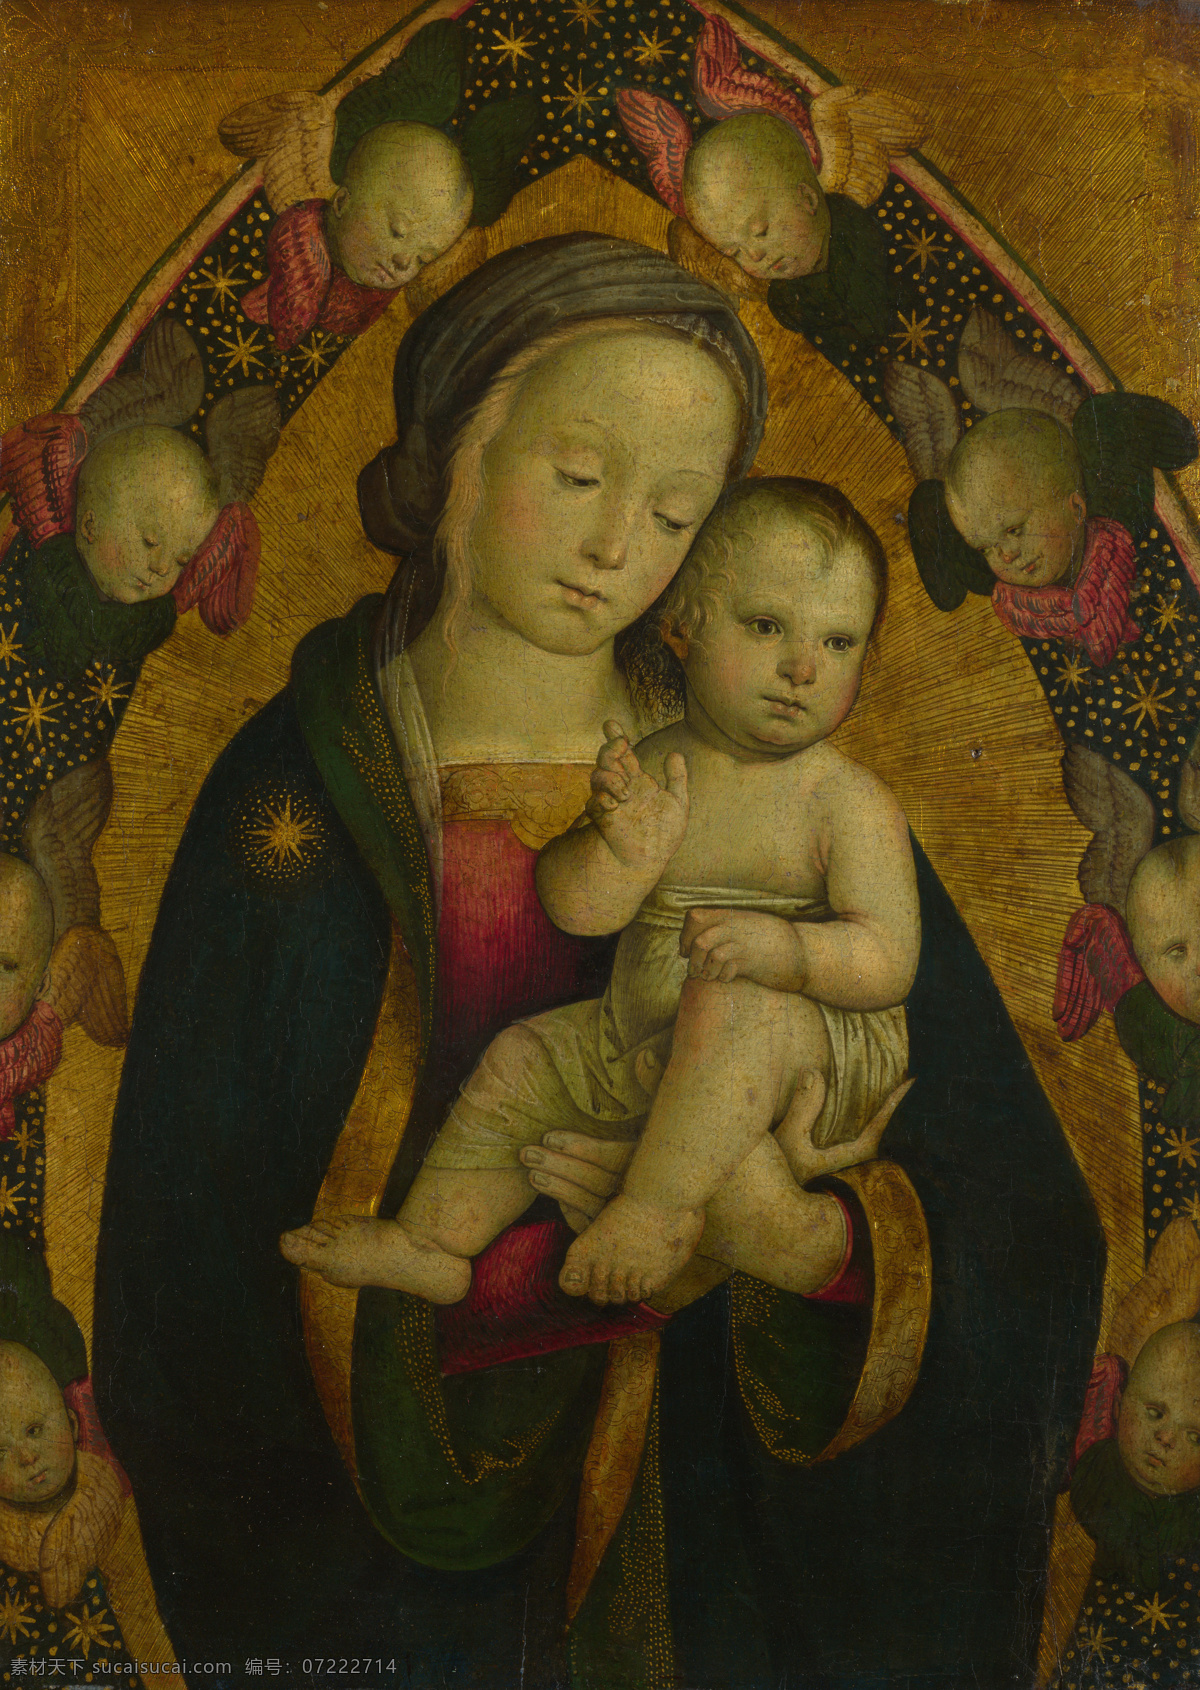 圣母 玛丽亚 油画 油画写生 人物油画 人物写生 人物肖像画 绘画艺术 装饰画 圣母玛丽亚 书画文字 文化艺术